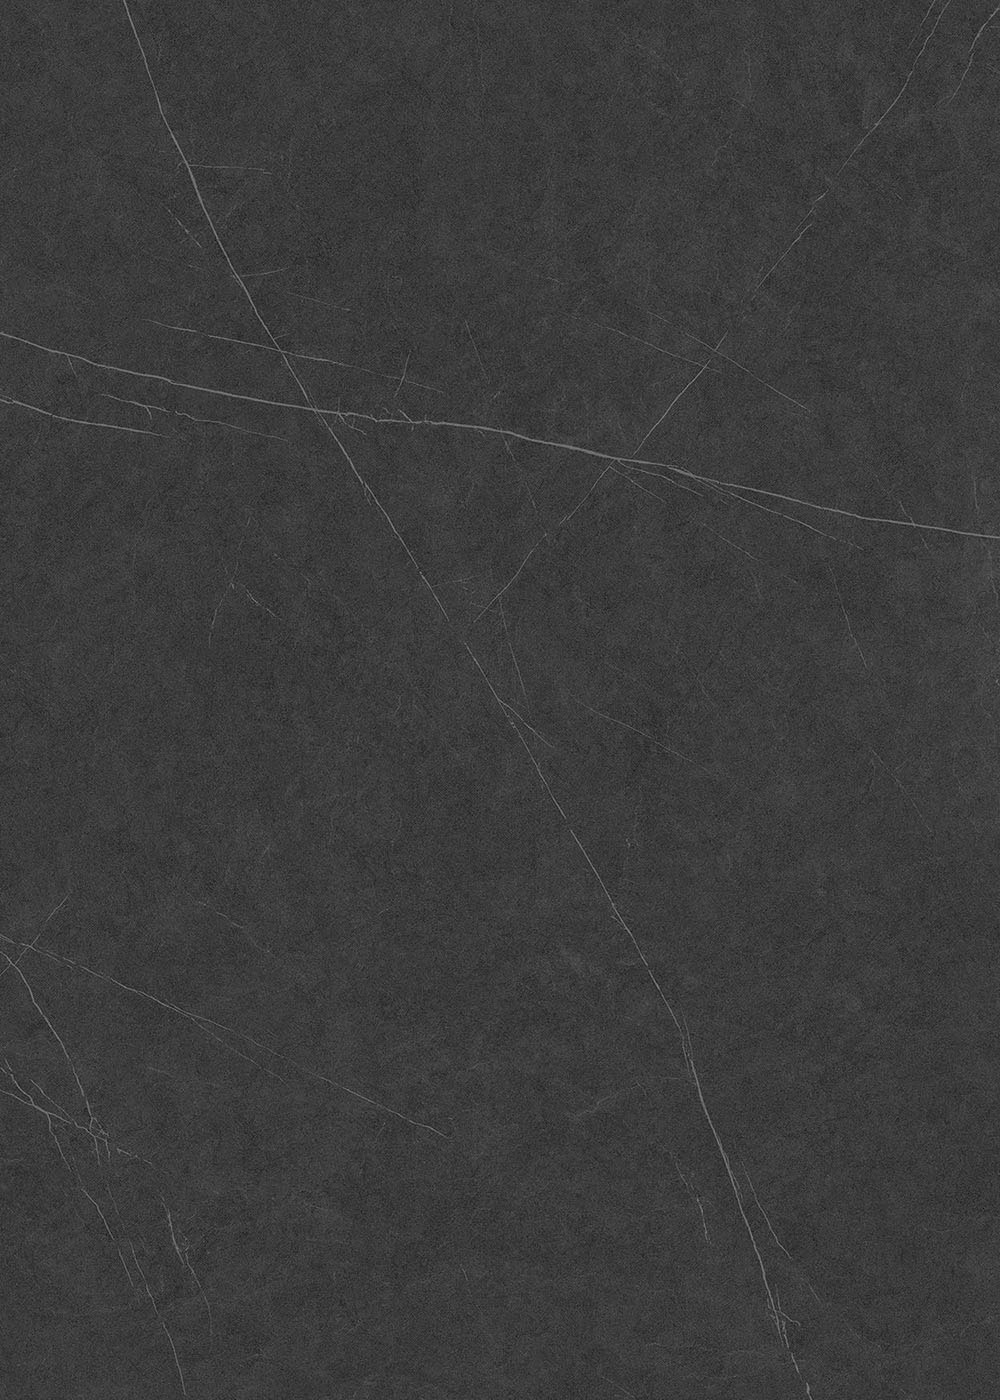 La Pietra Marble & Granite pz lithotech allure anthracite 01